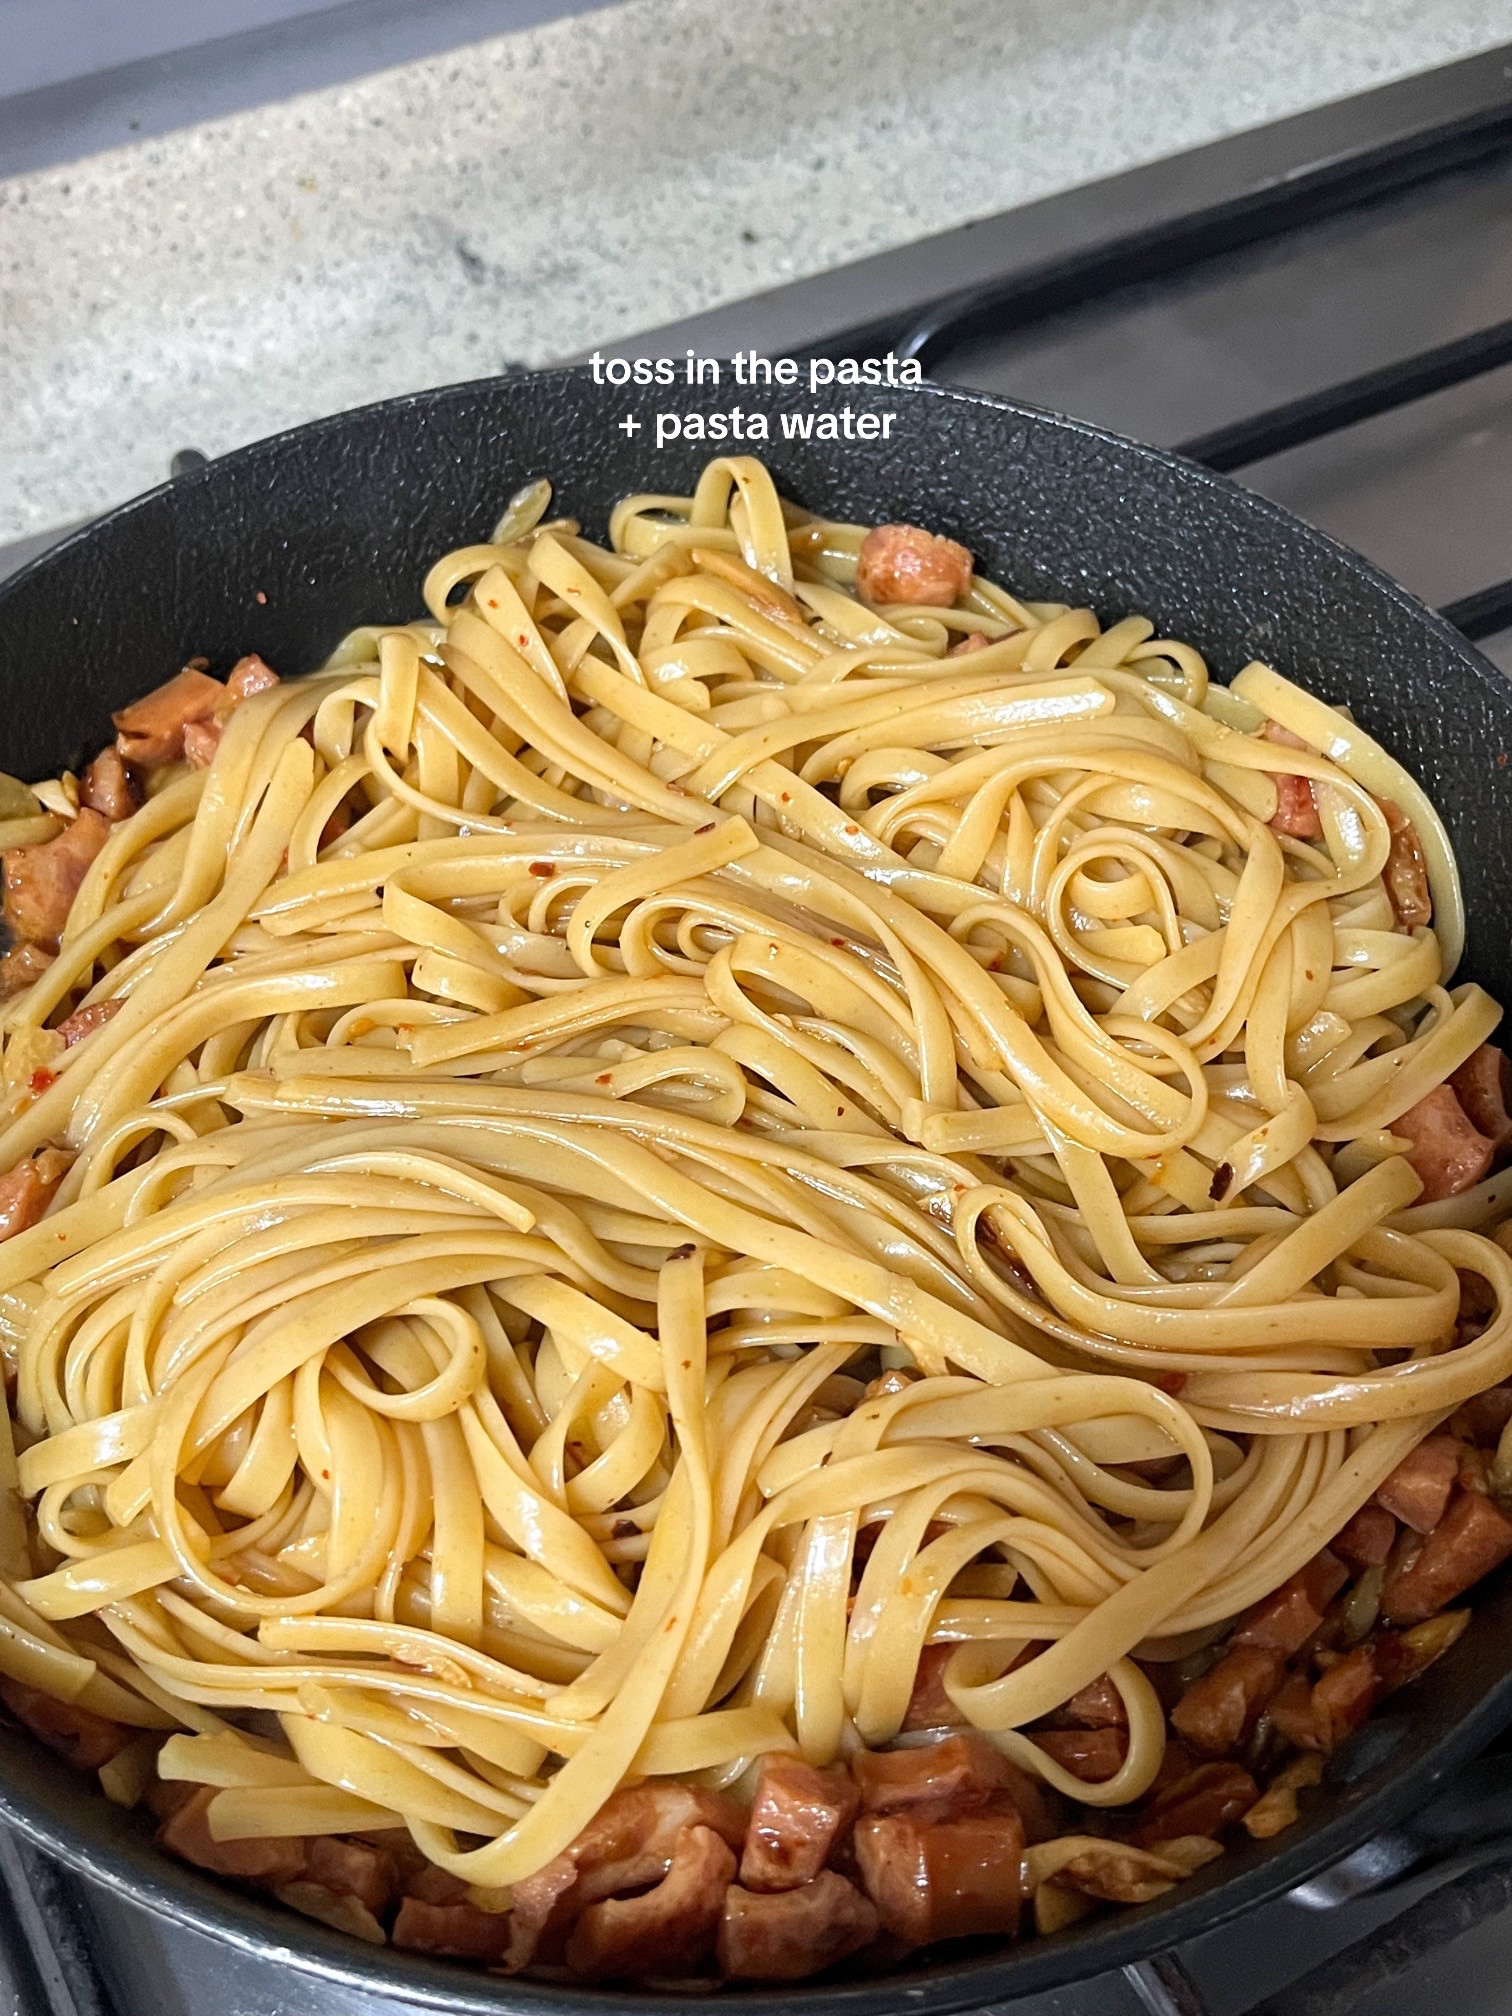 make spicy chorizo pasta with me